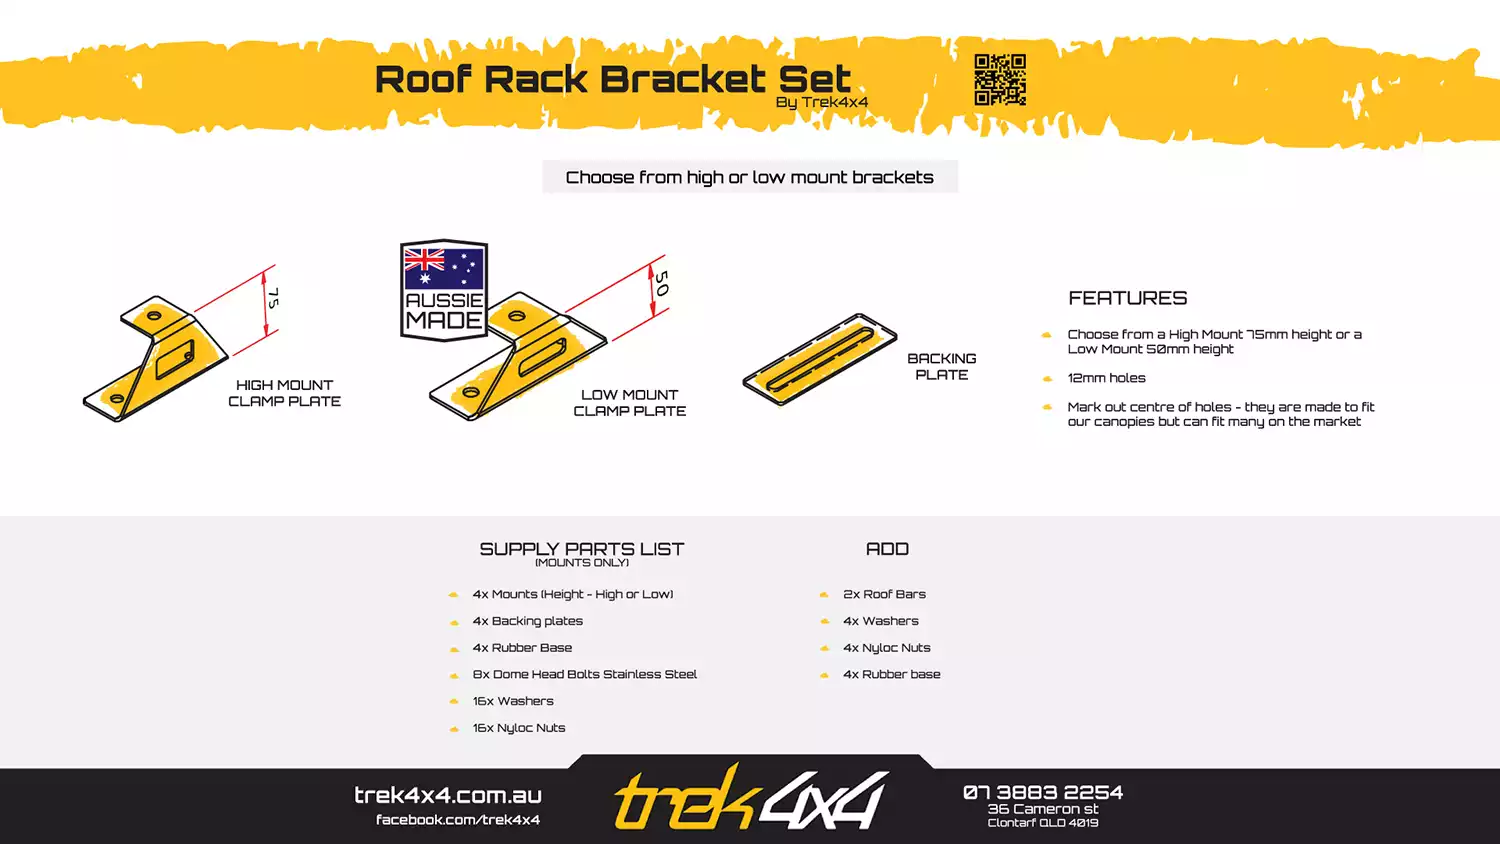 Rack Bracket Set for TREK Roof Rack - Brochure